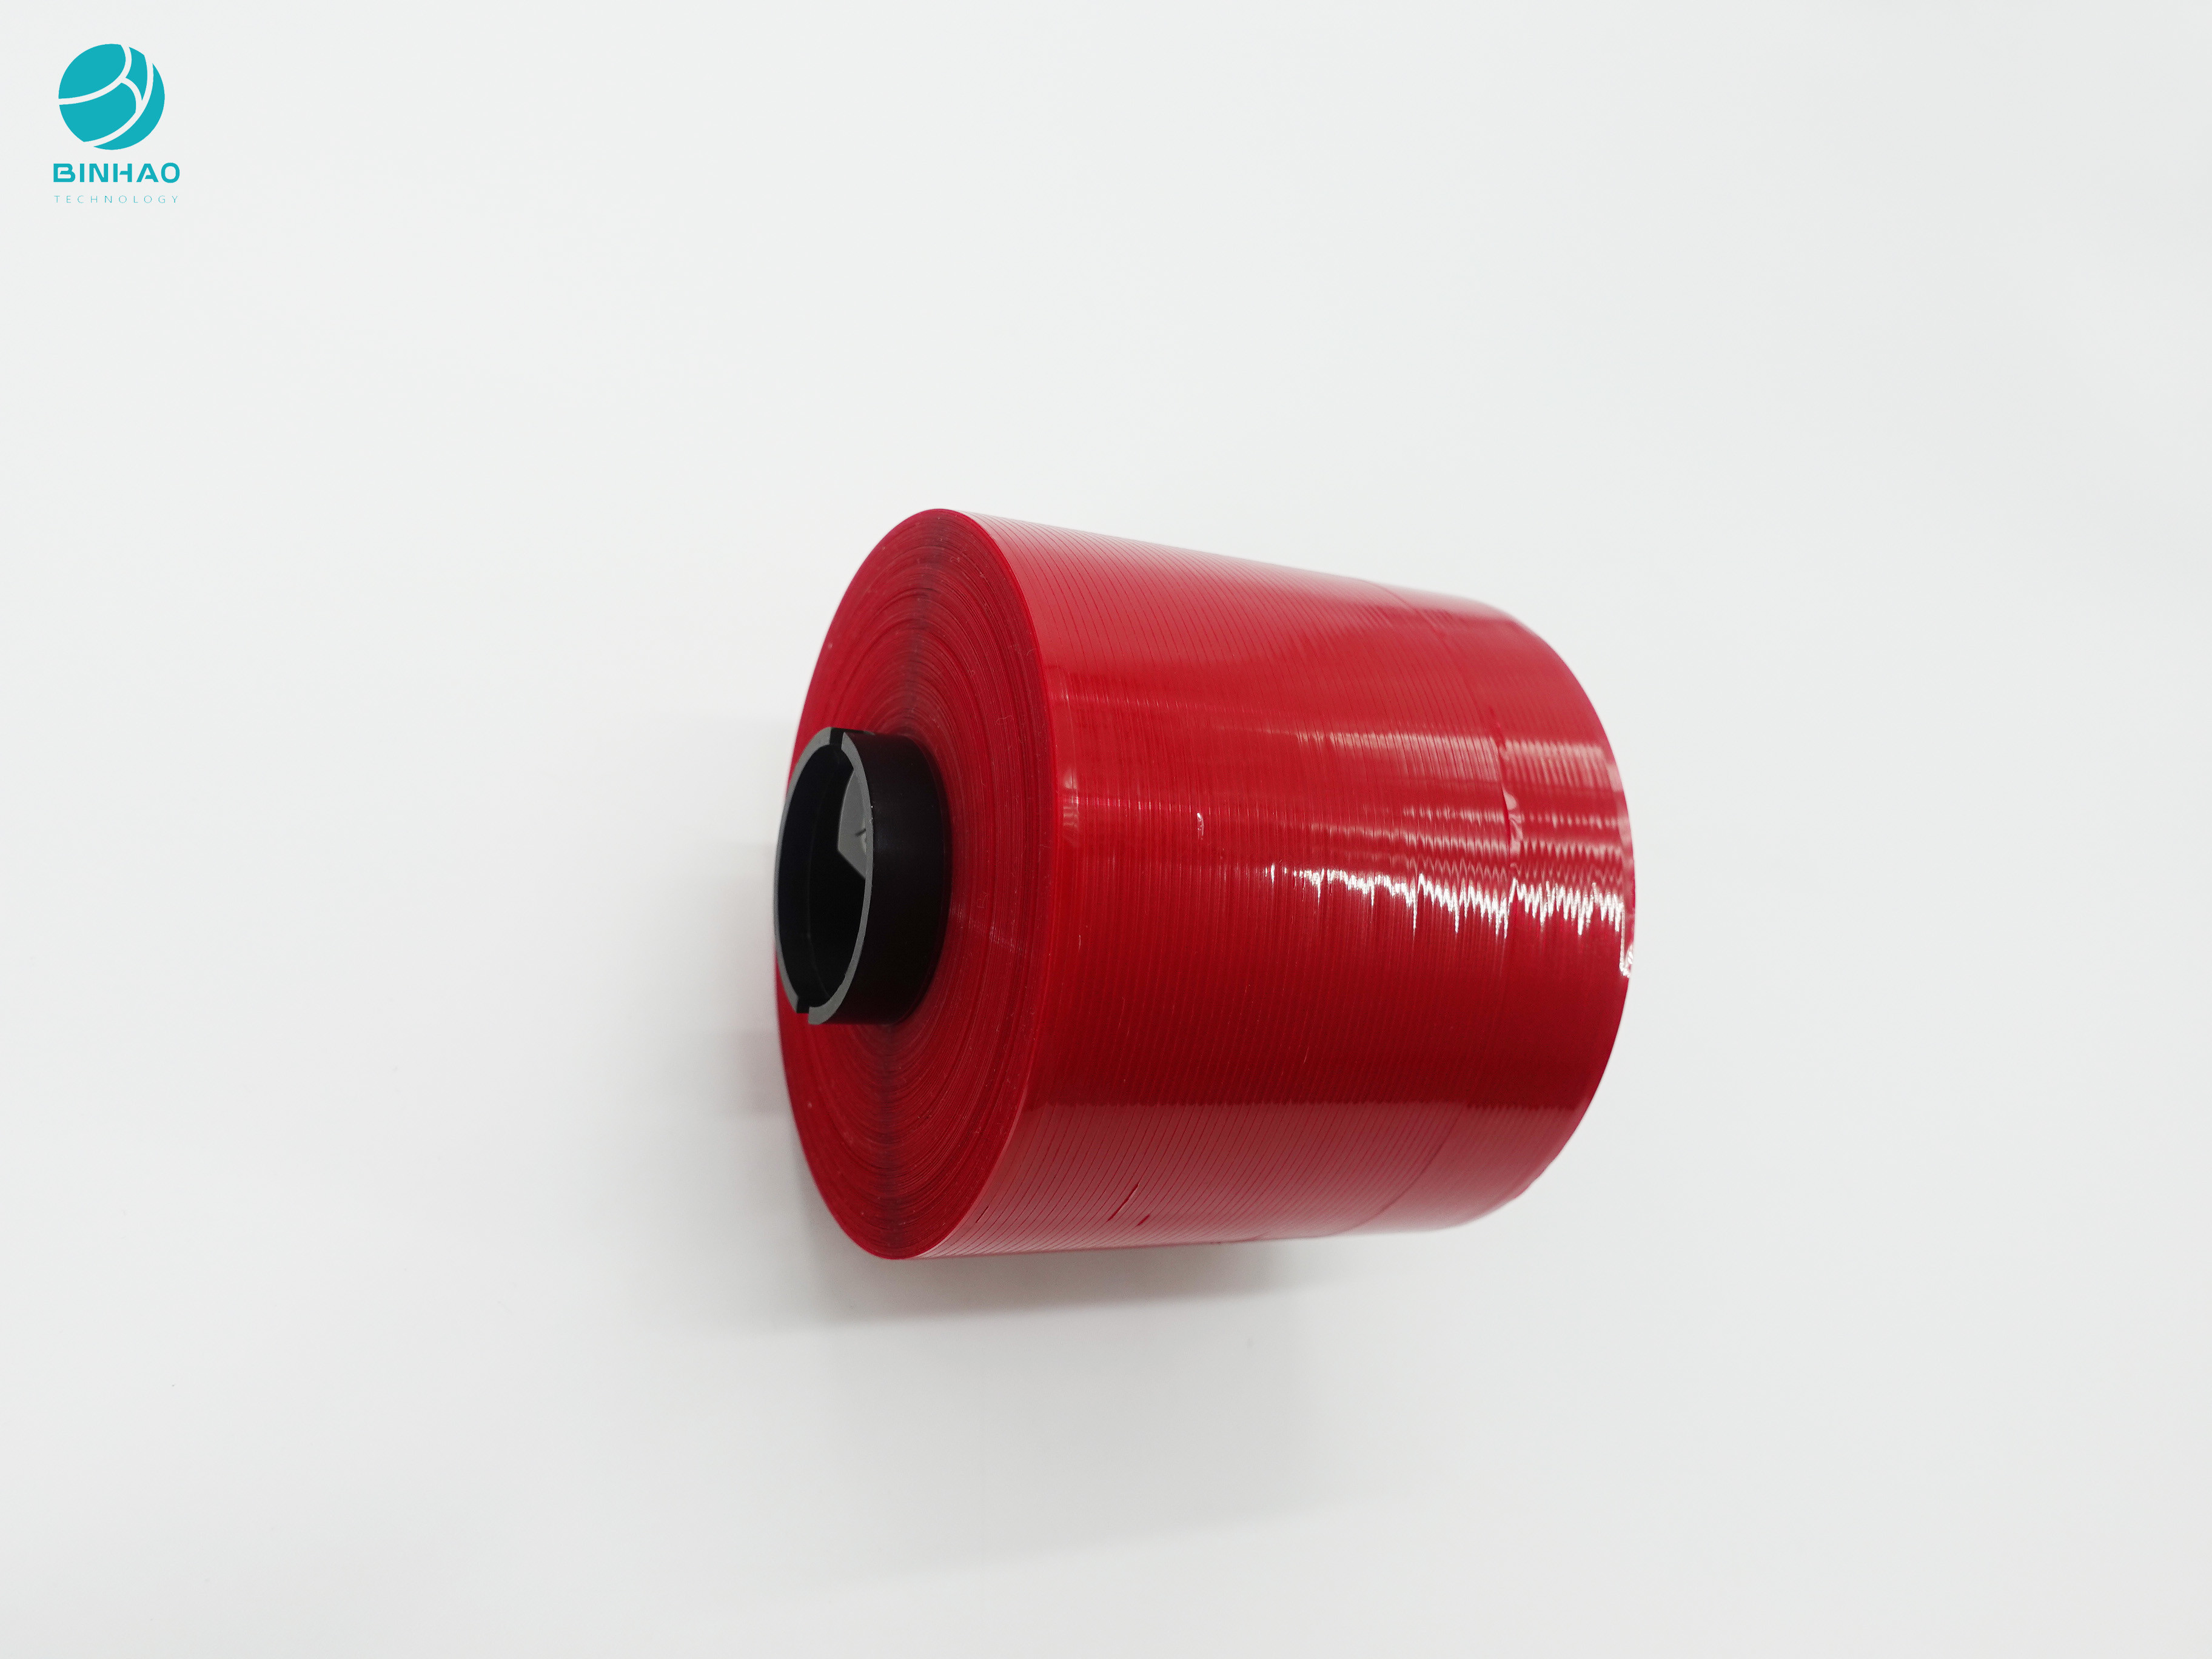 nastro adesivo della striscia di strappo della buona decorazione rosso-cupo di 4mm per il pacchetto dei prodotti della scatola